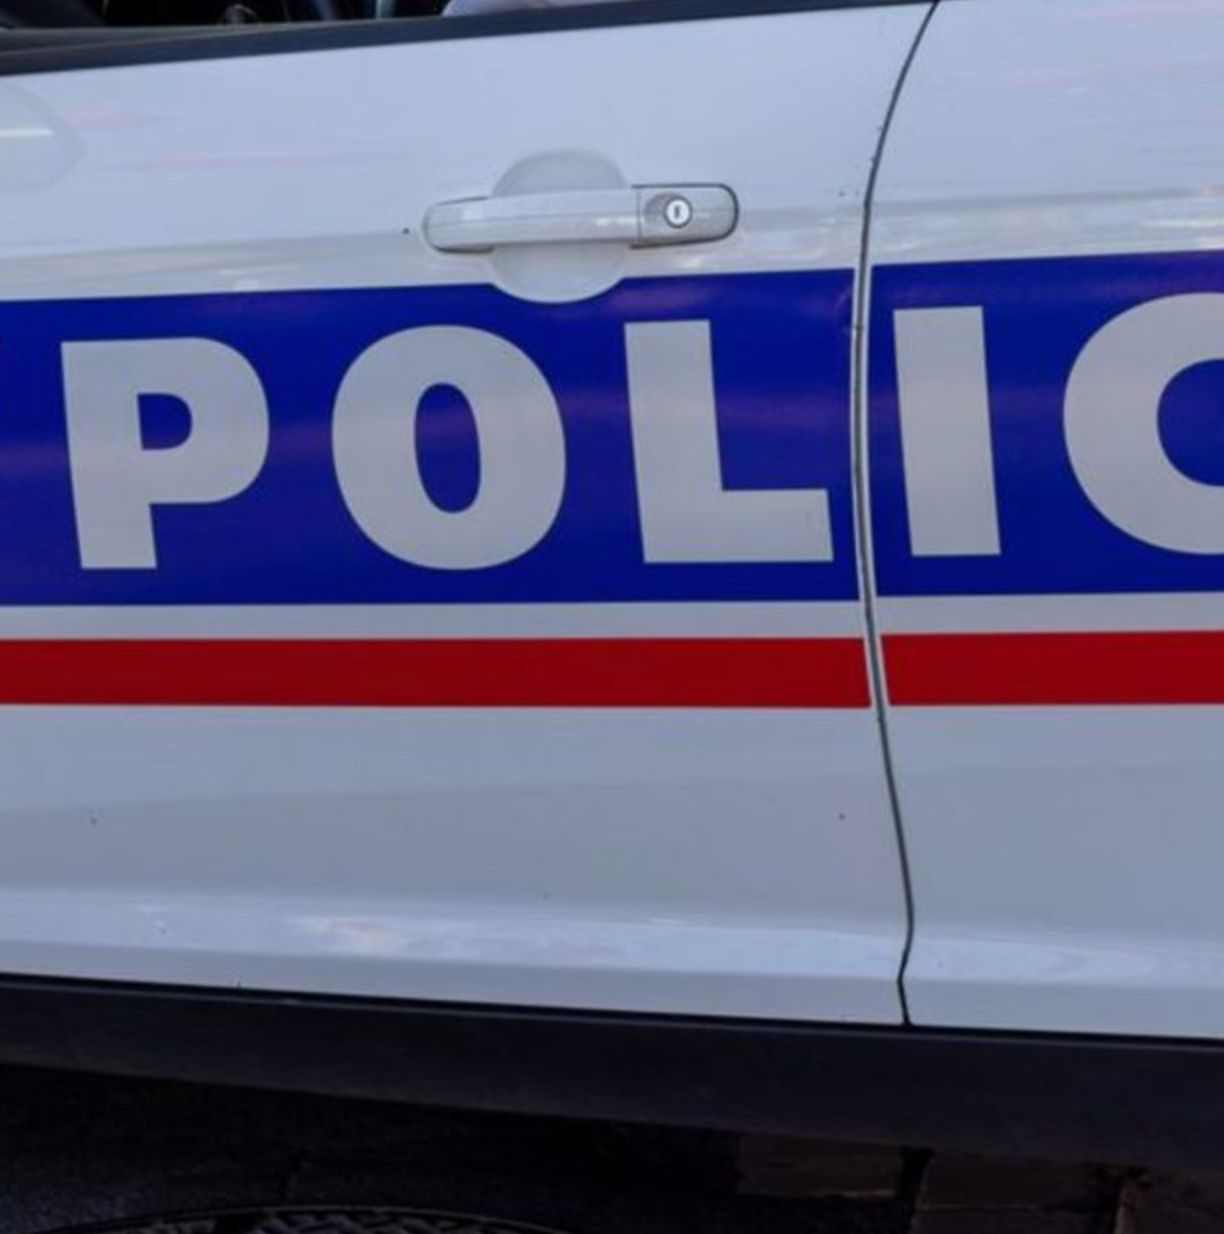 Tirs devant l'hôpital Henry Dunant à Paris: une personne tuée, une autre blessée